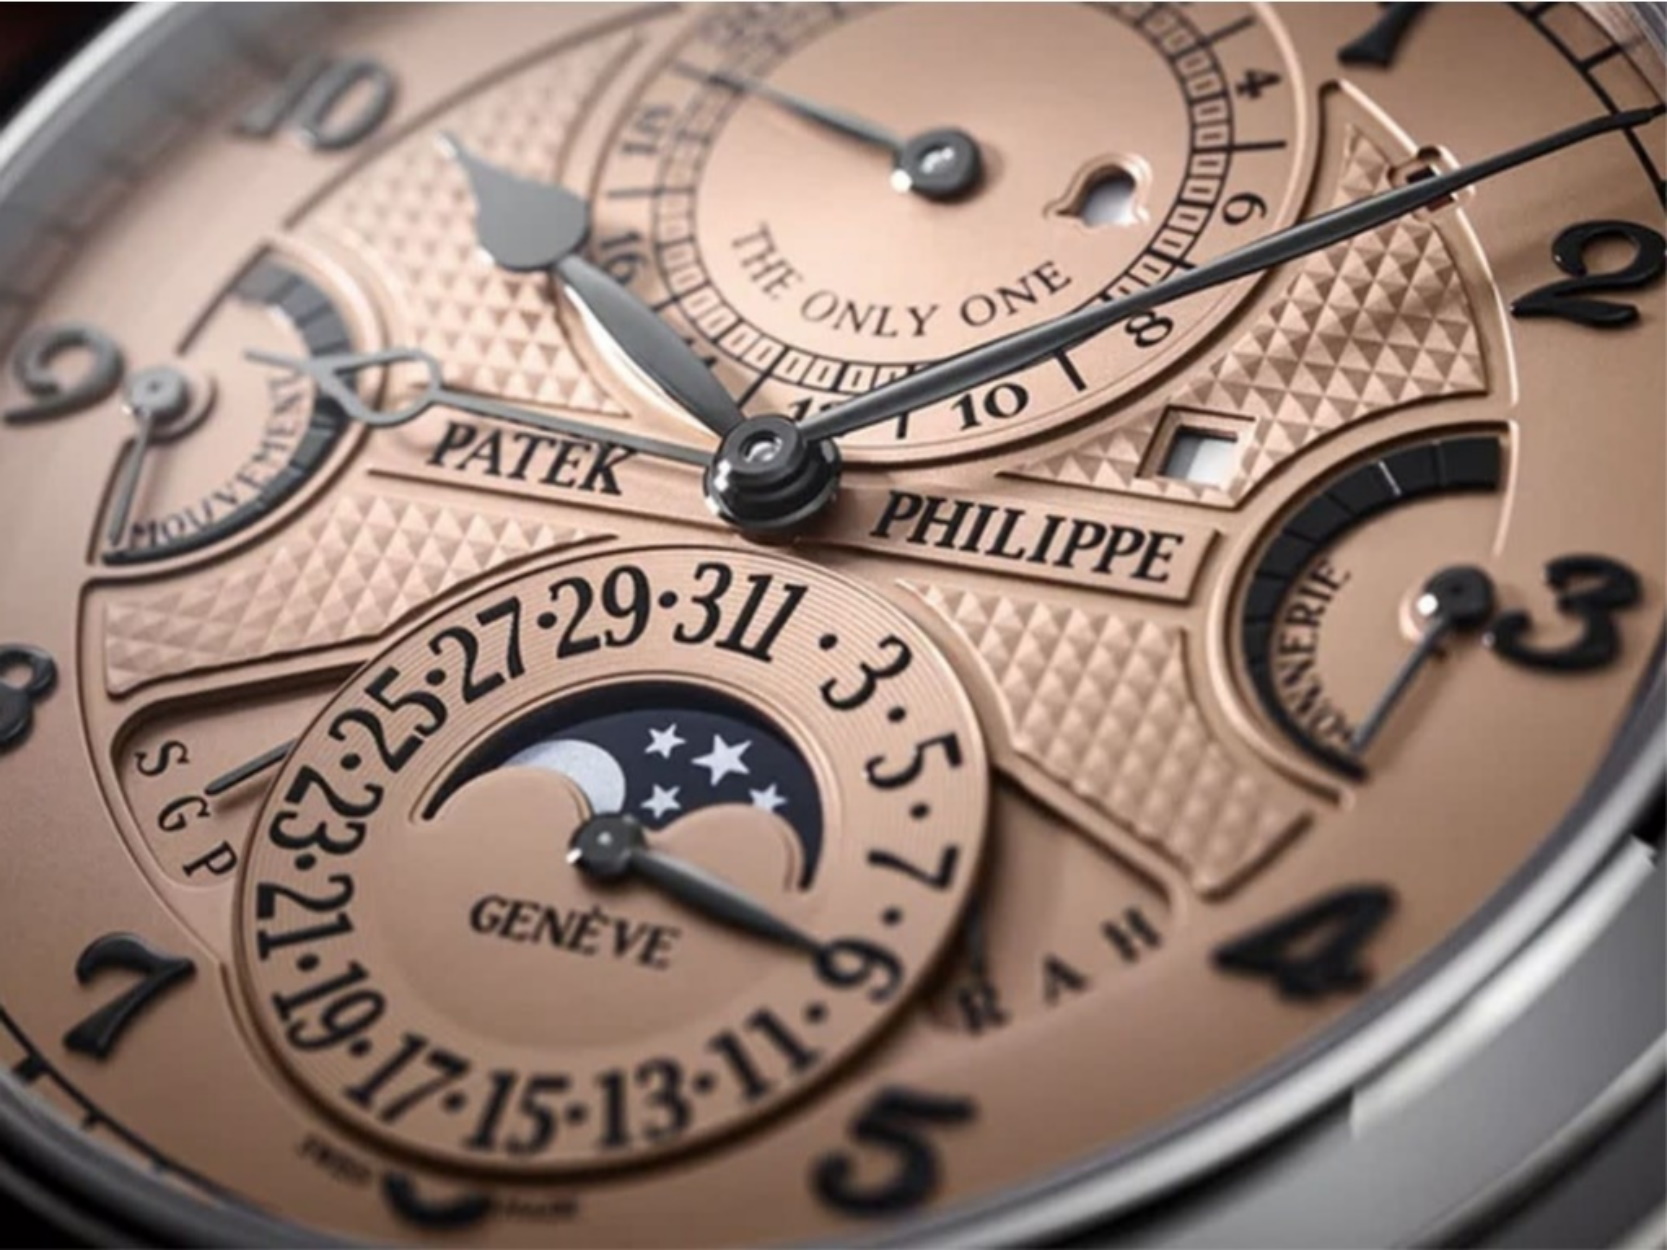 Αυτό το Patek Philippe των 31 εκατ. δολαρίων είναι το πιο ακριβό ρολόι στον κόσμο!